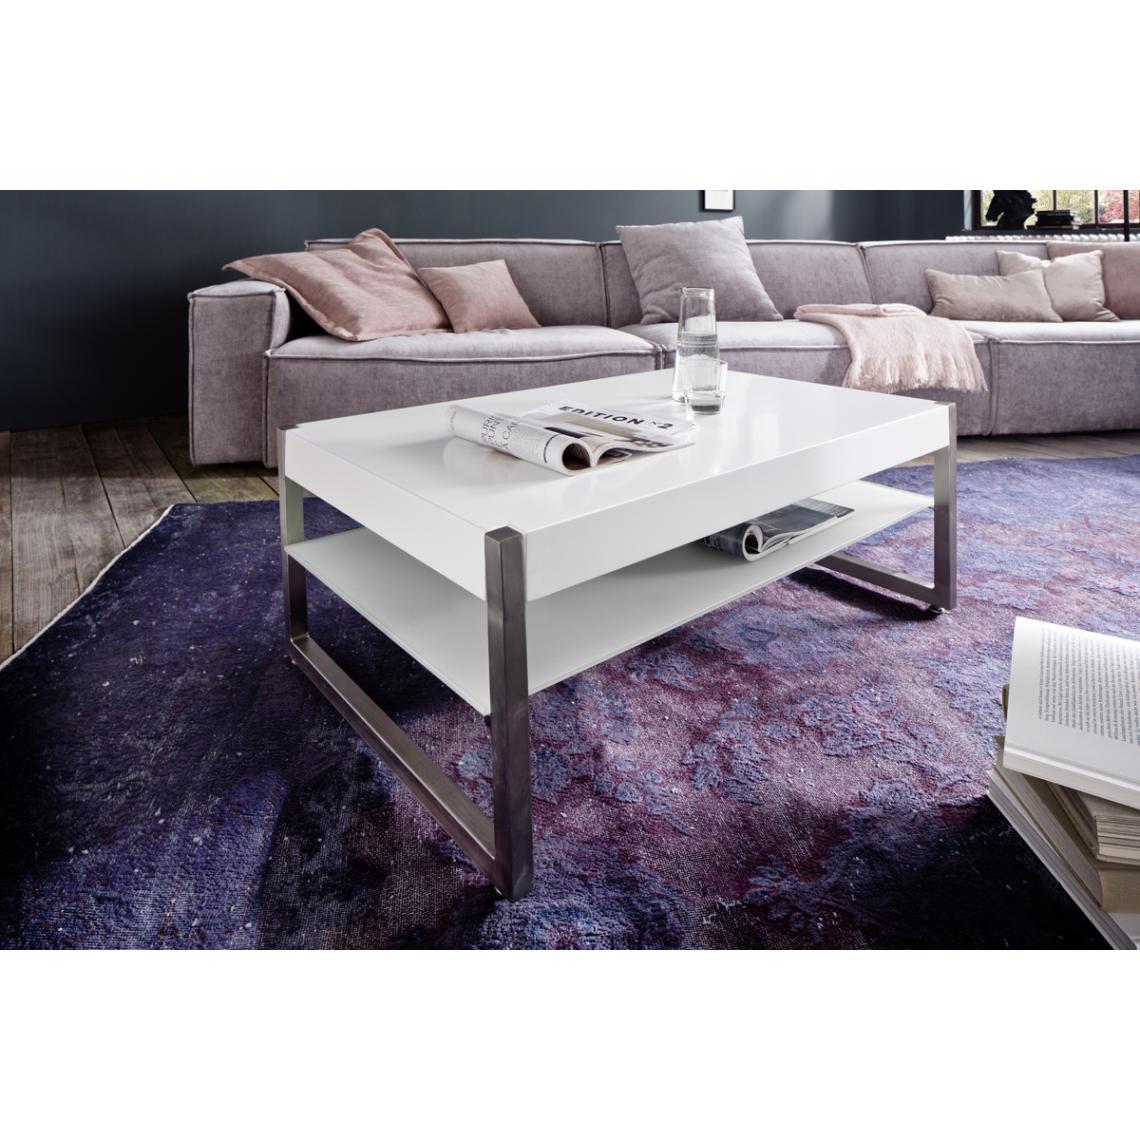 Pegane - Table basse en verre et métal coloris laqué blanc mat - L105 x H38 x P65 cm - Tables basses